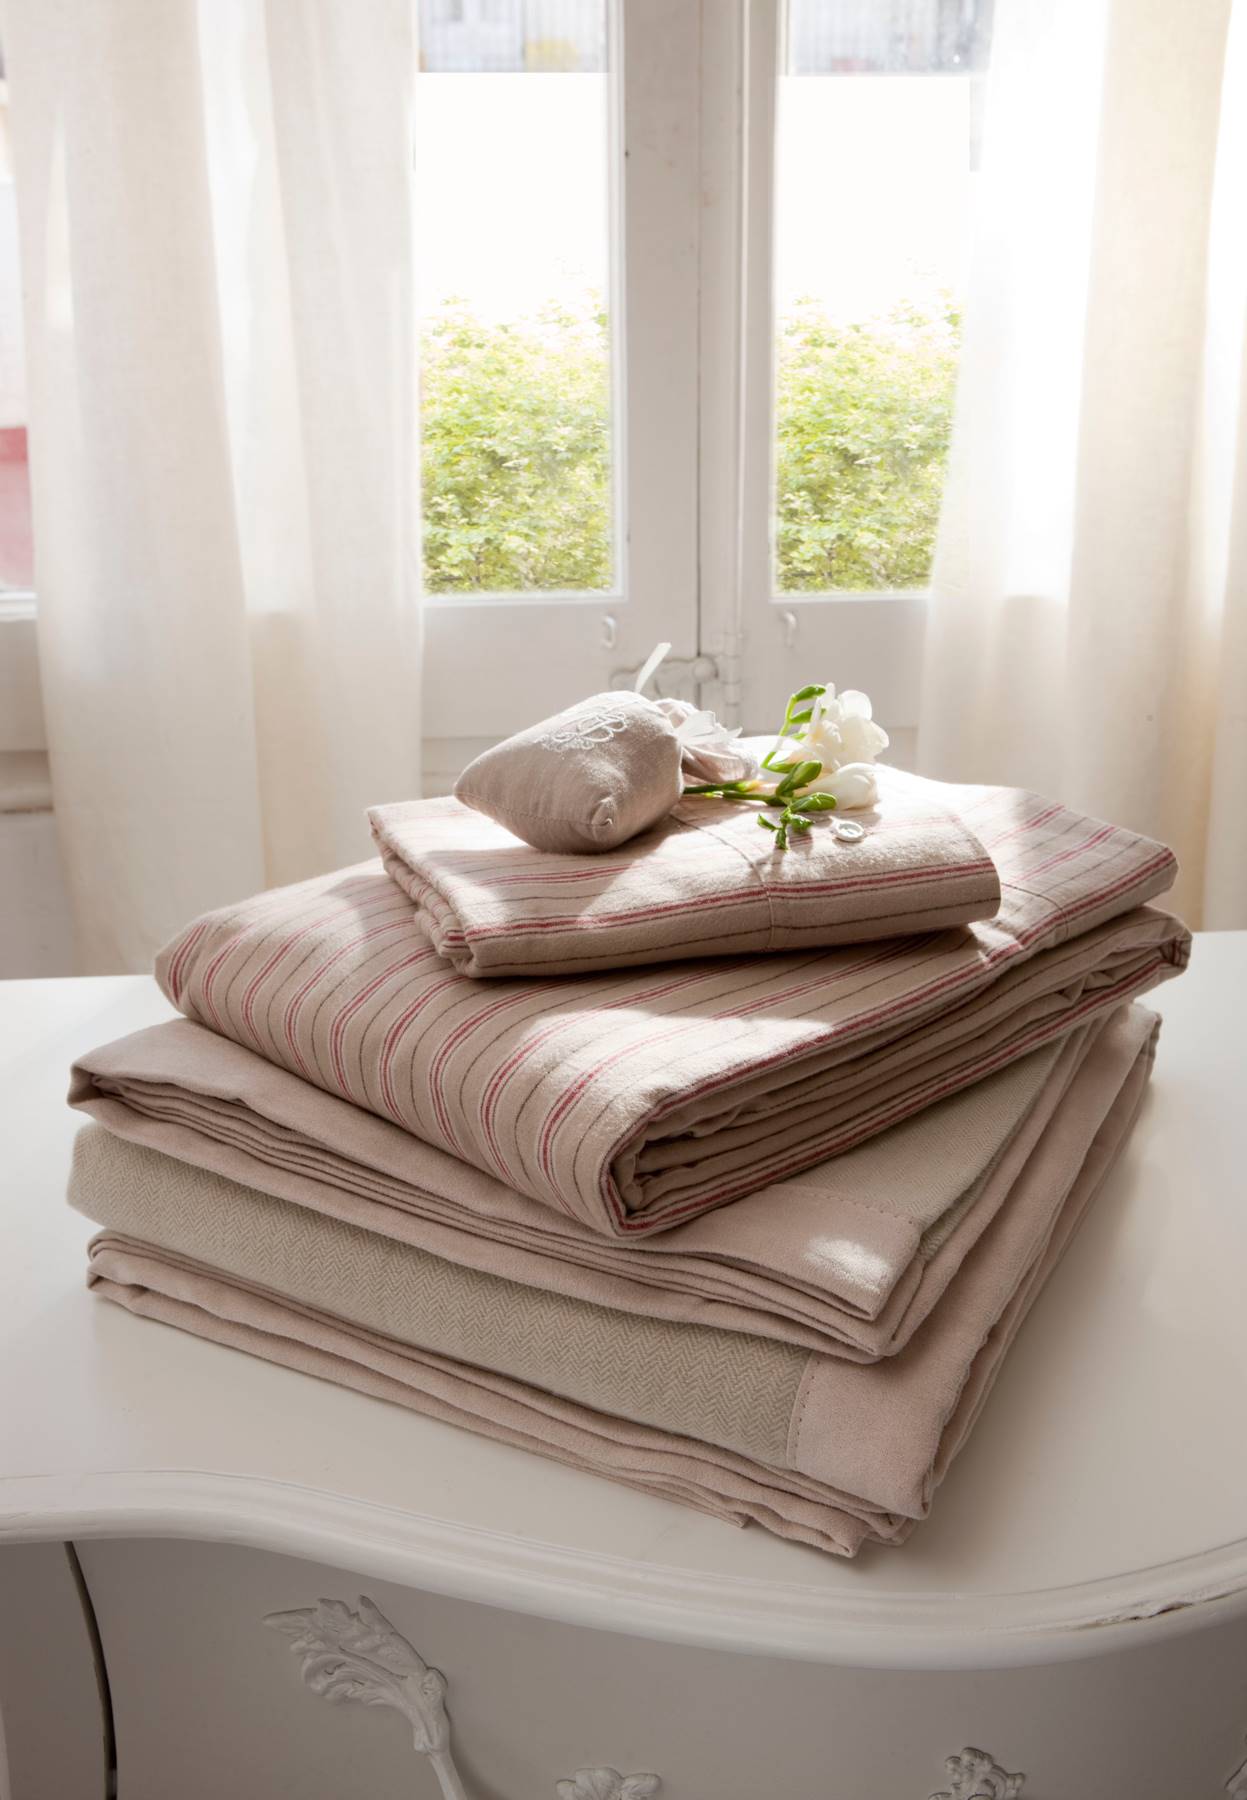 Detalle de sábanas y ropa de cama en tonos rosa y gris sobre consola_312810